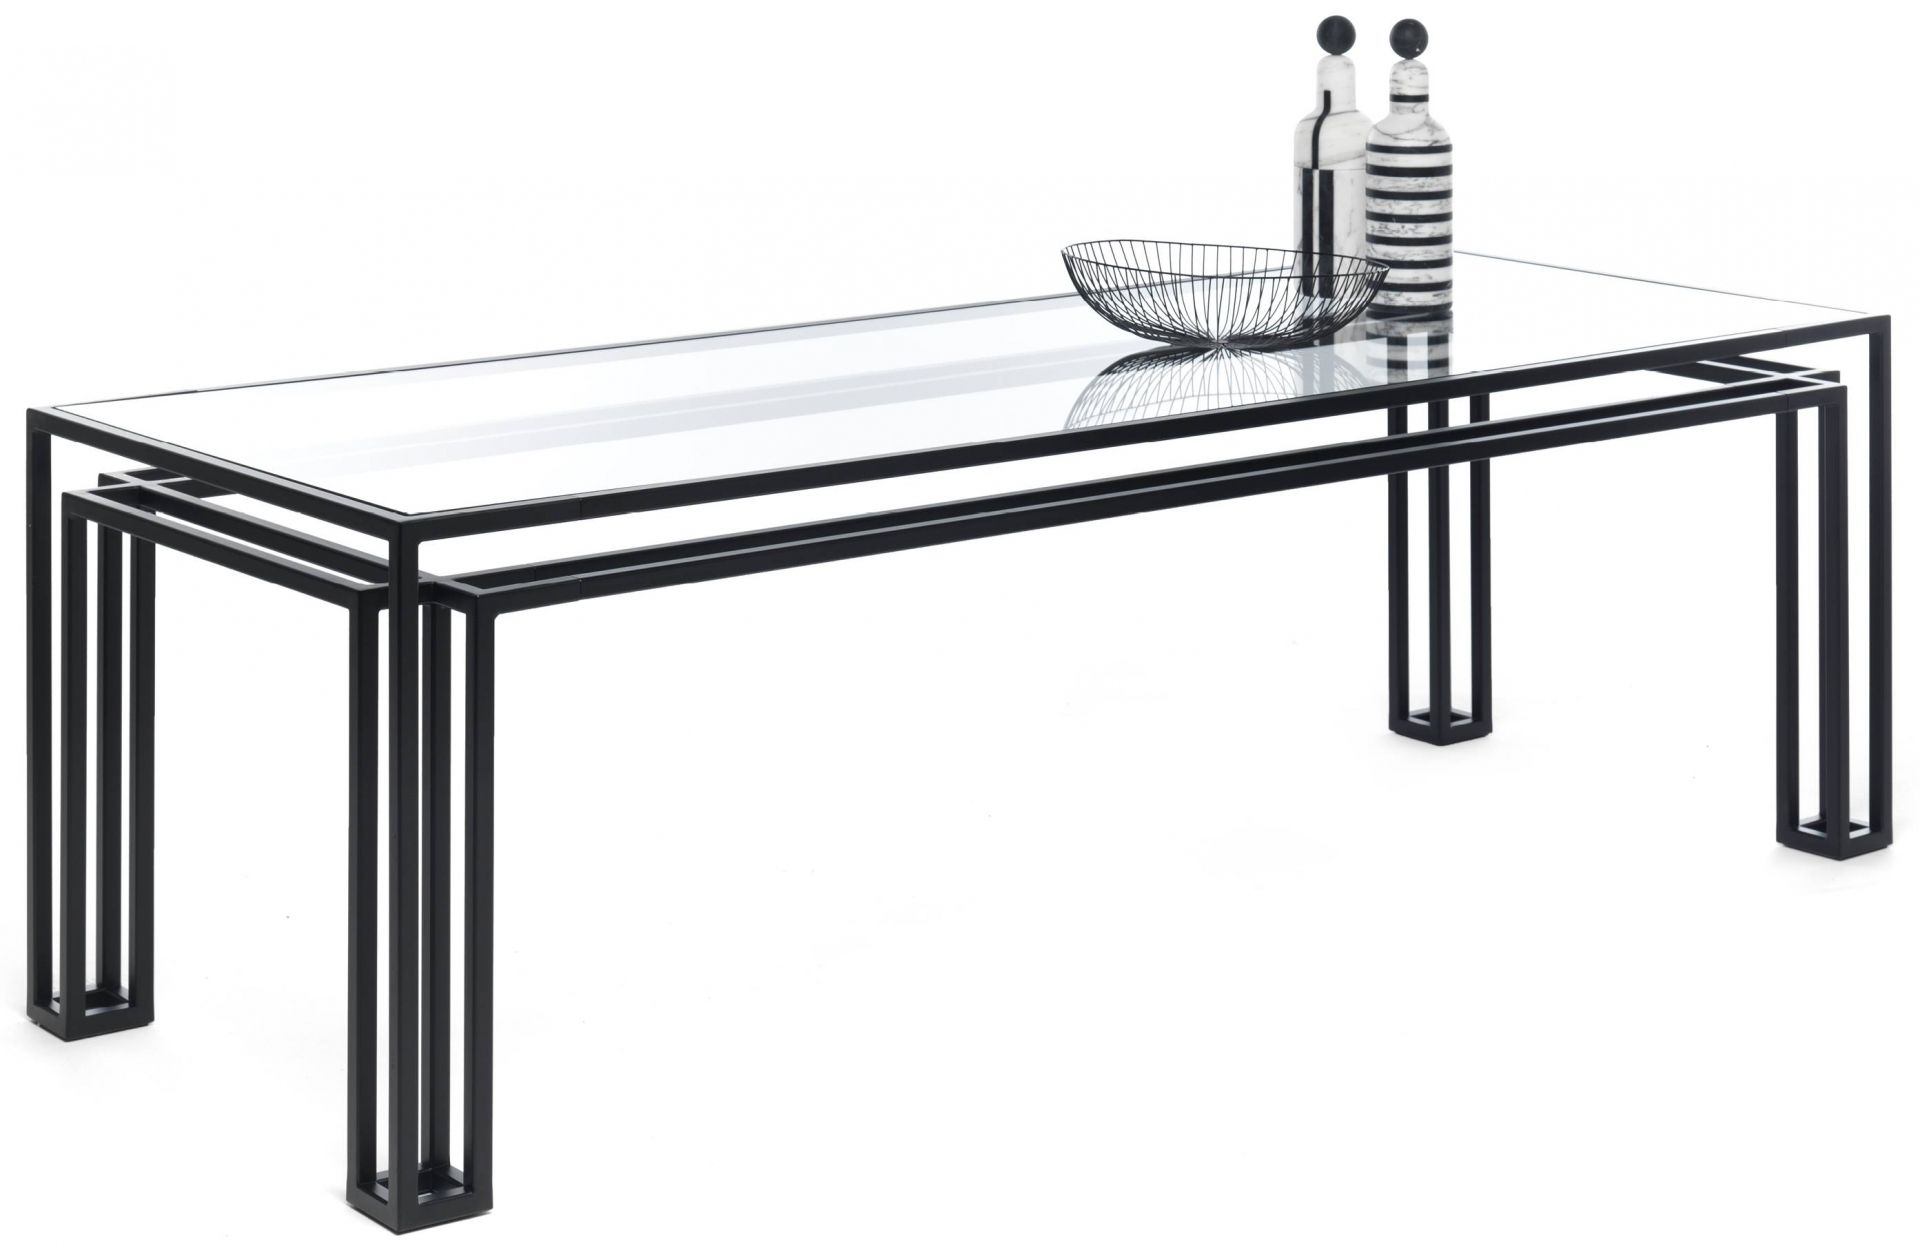 Mogg designové jídelní stoly Hotline (šířka 240 cm) - DESIGNPROPAGANDA